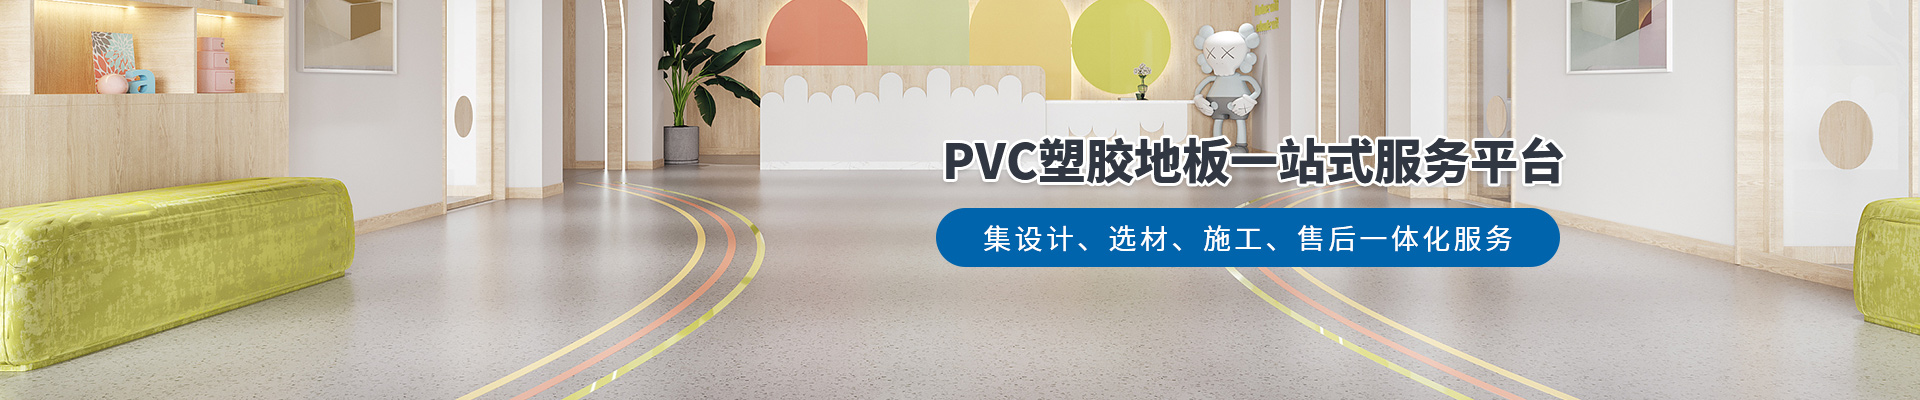 鳳城橡塑，PVC塑膠地板一站式服務平臺